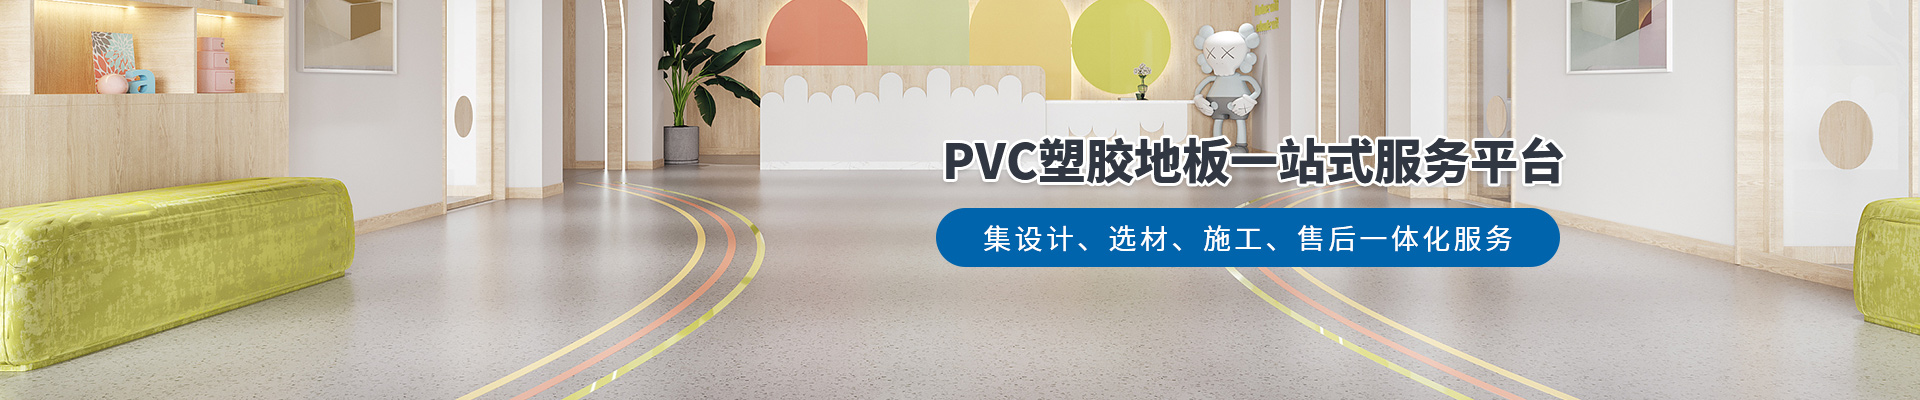 鳳城橡塑，PVC塑膠地板一站式服務平臺